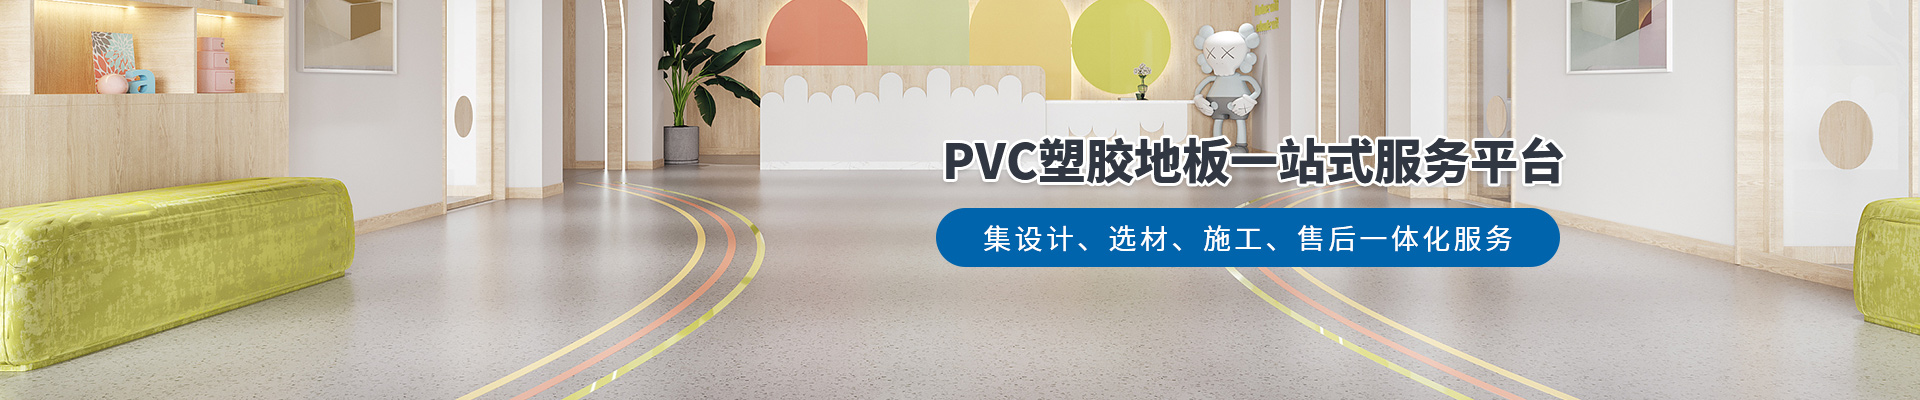 鳳城橡塑，PVC塑膠地板一站式服務平臺